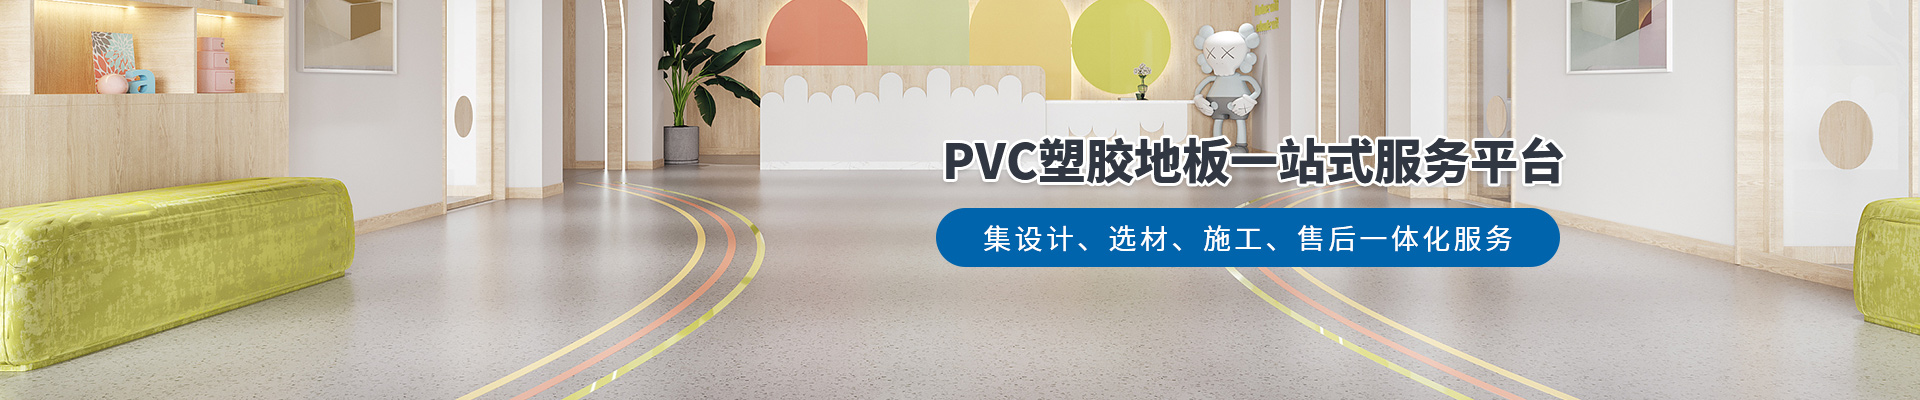 鳳城橡塑，PVC塑膠地板一站式服務平臺